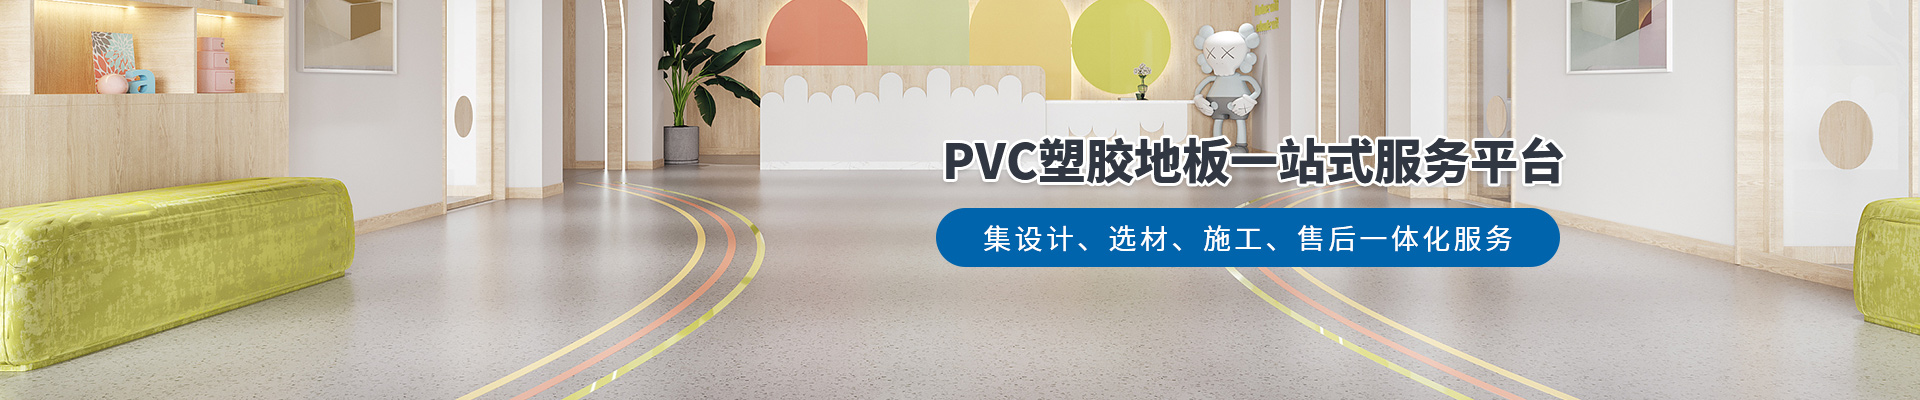 鳳城橡塑，PVC塑膠地板一站式服務平臺